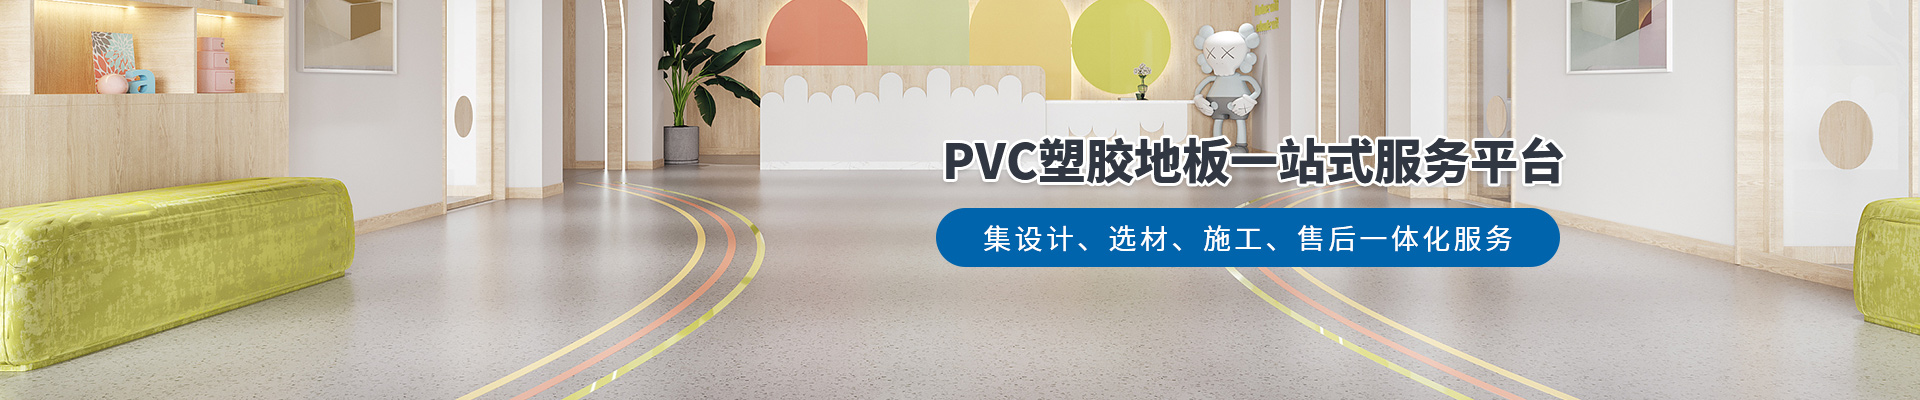 鳳城橡塑，PVC塑膠地板一站式服務平臺